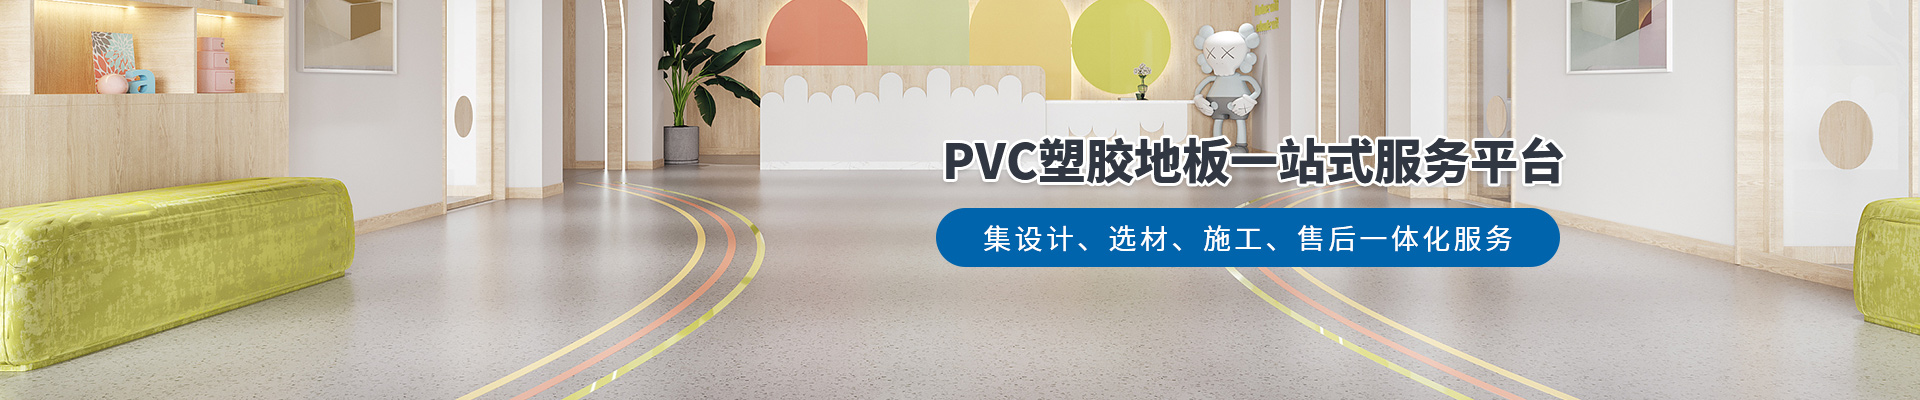 鳳城橡塑，PVC塑膠地板一站式服務平臺